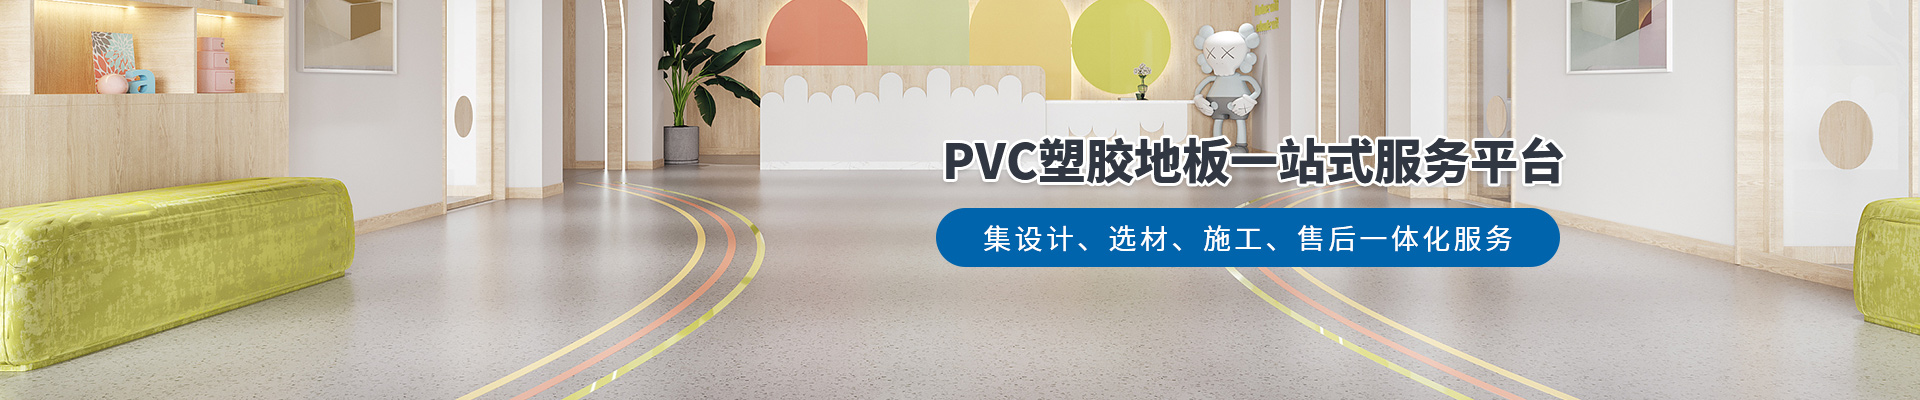 鳳城橡塑，PVC塑膠地板一站式服務平臺